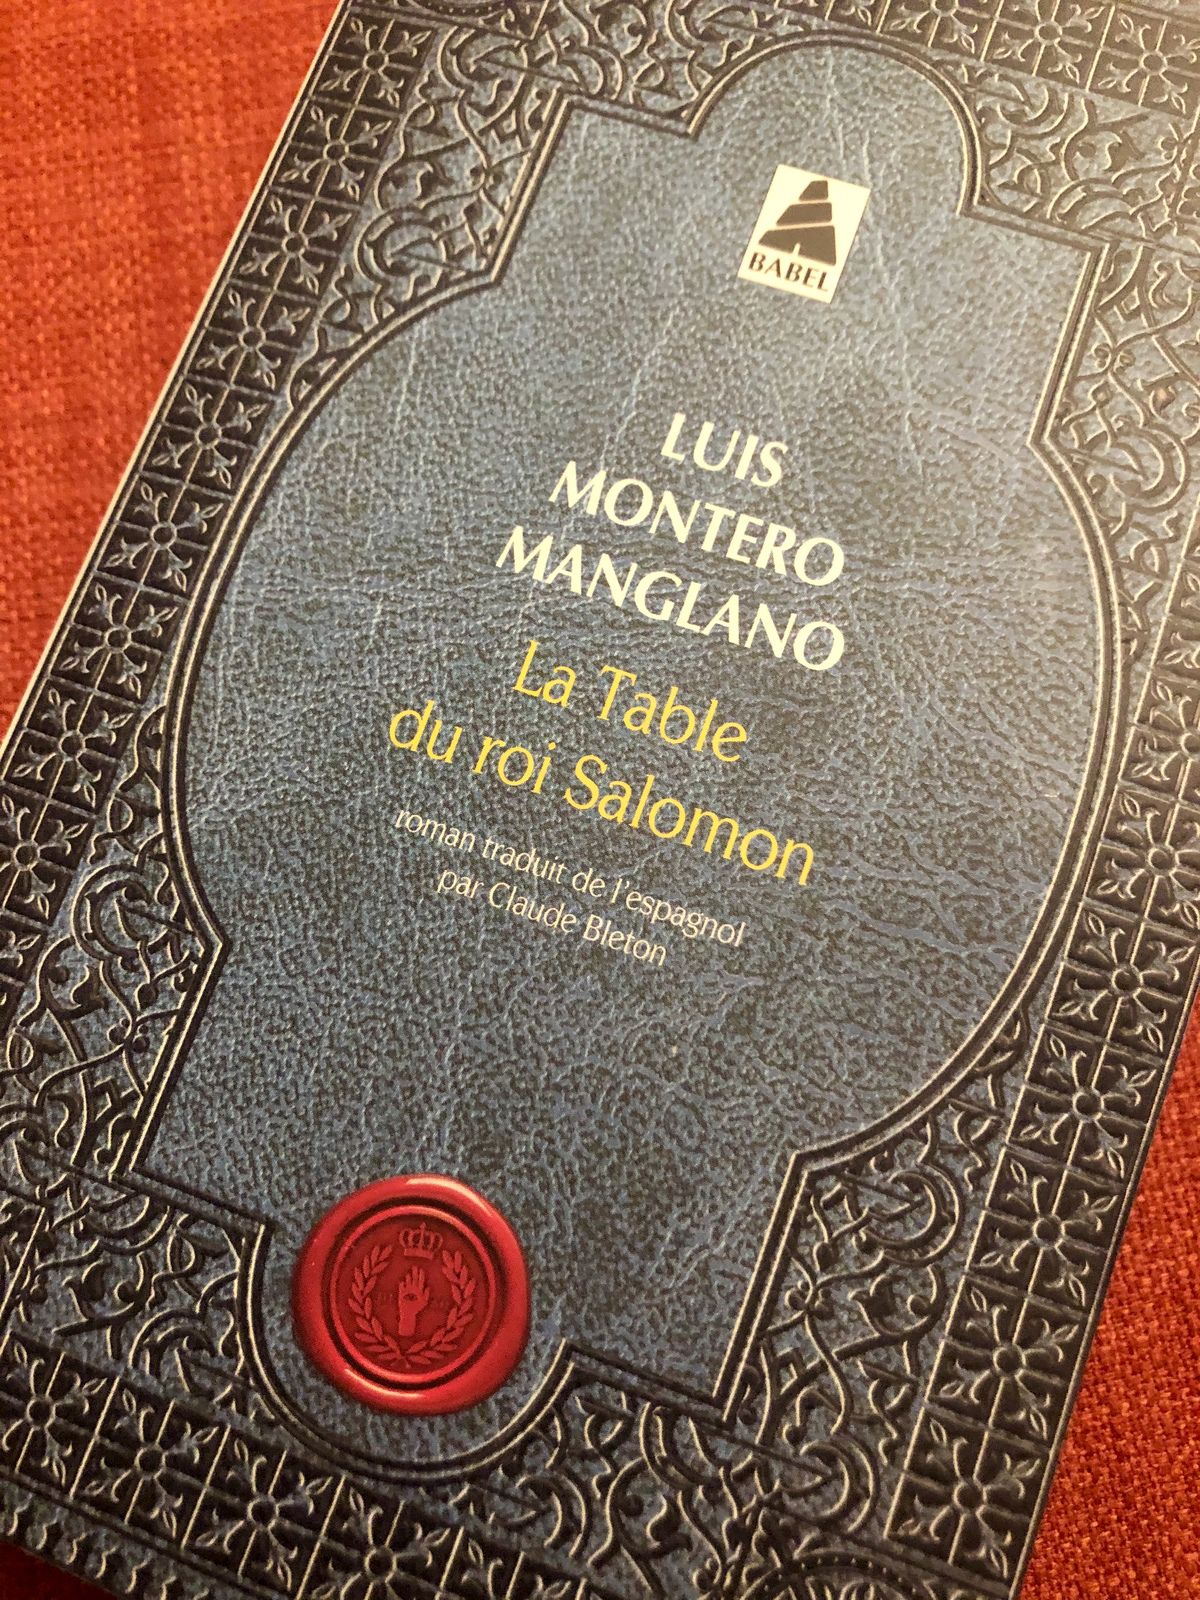 LA TABLE DU ROI SALOMON, de Luis Montero Manglano - Les lectures d'Arès